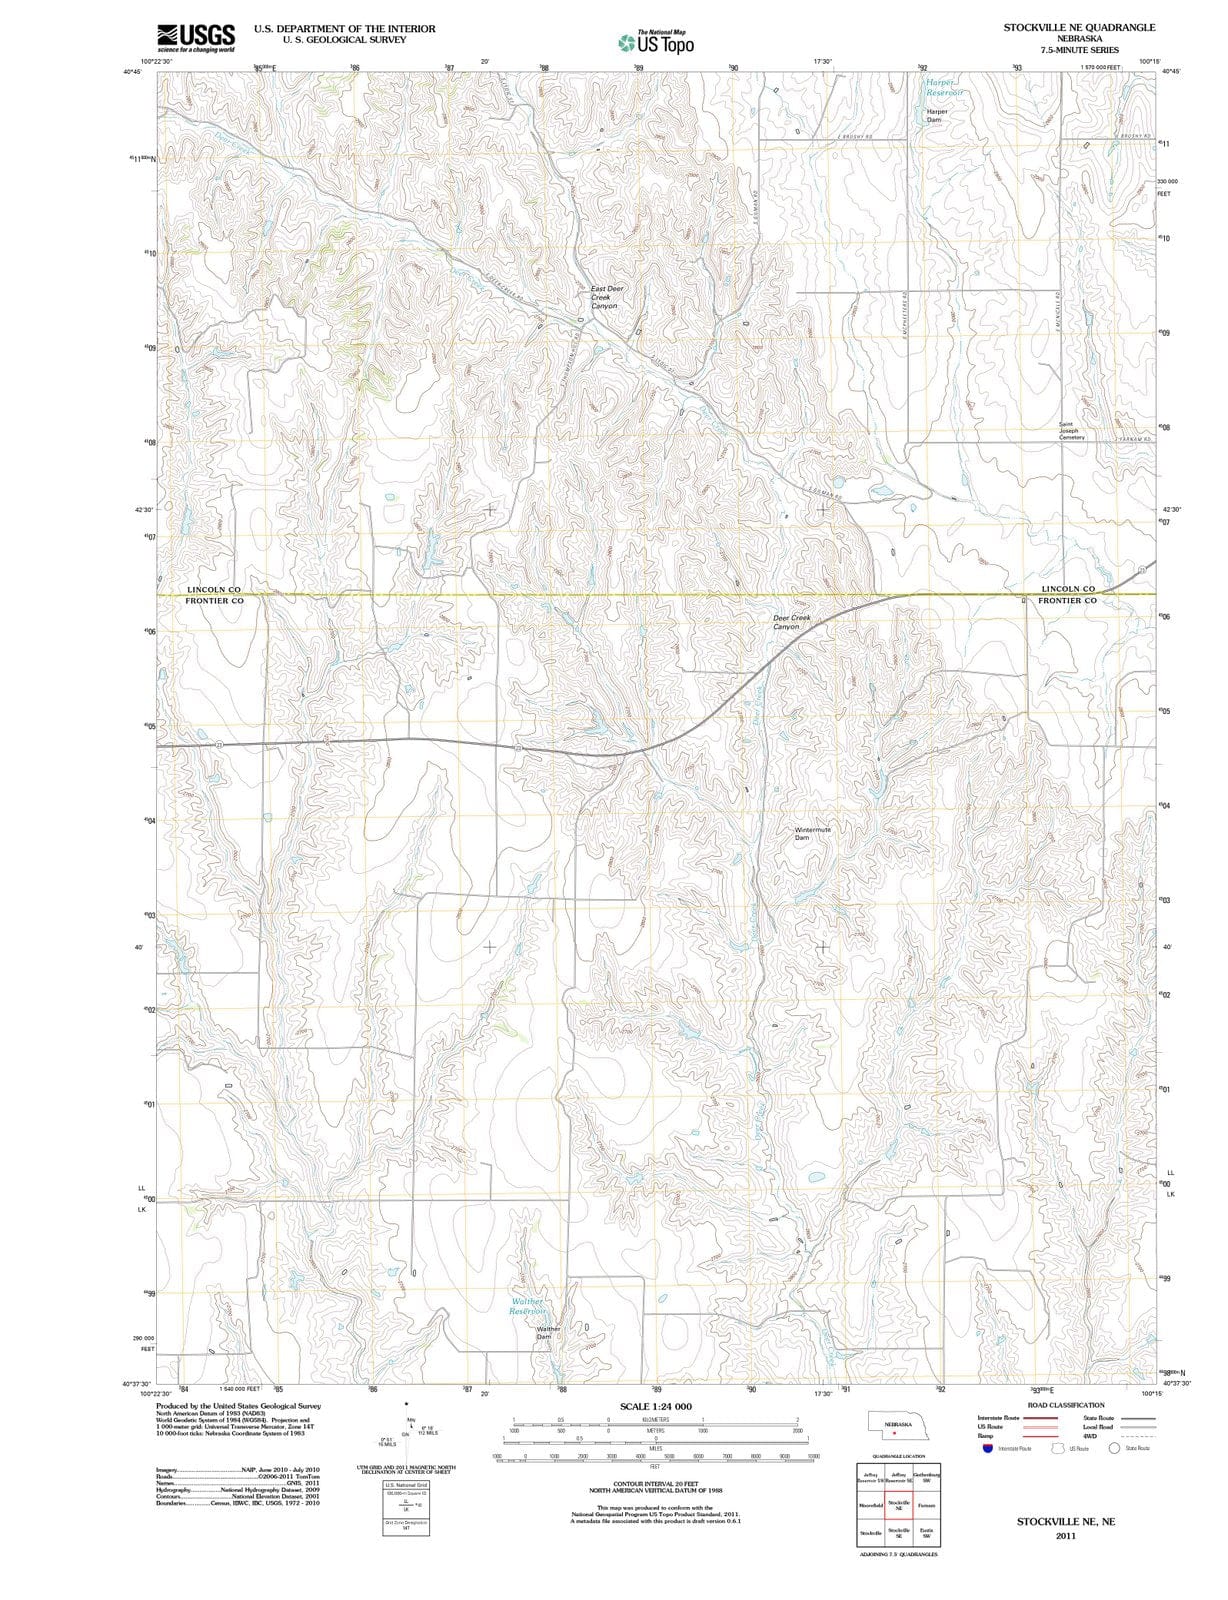 2011 Stockville, NE - Nebraska - USGS Topographic Map v2